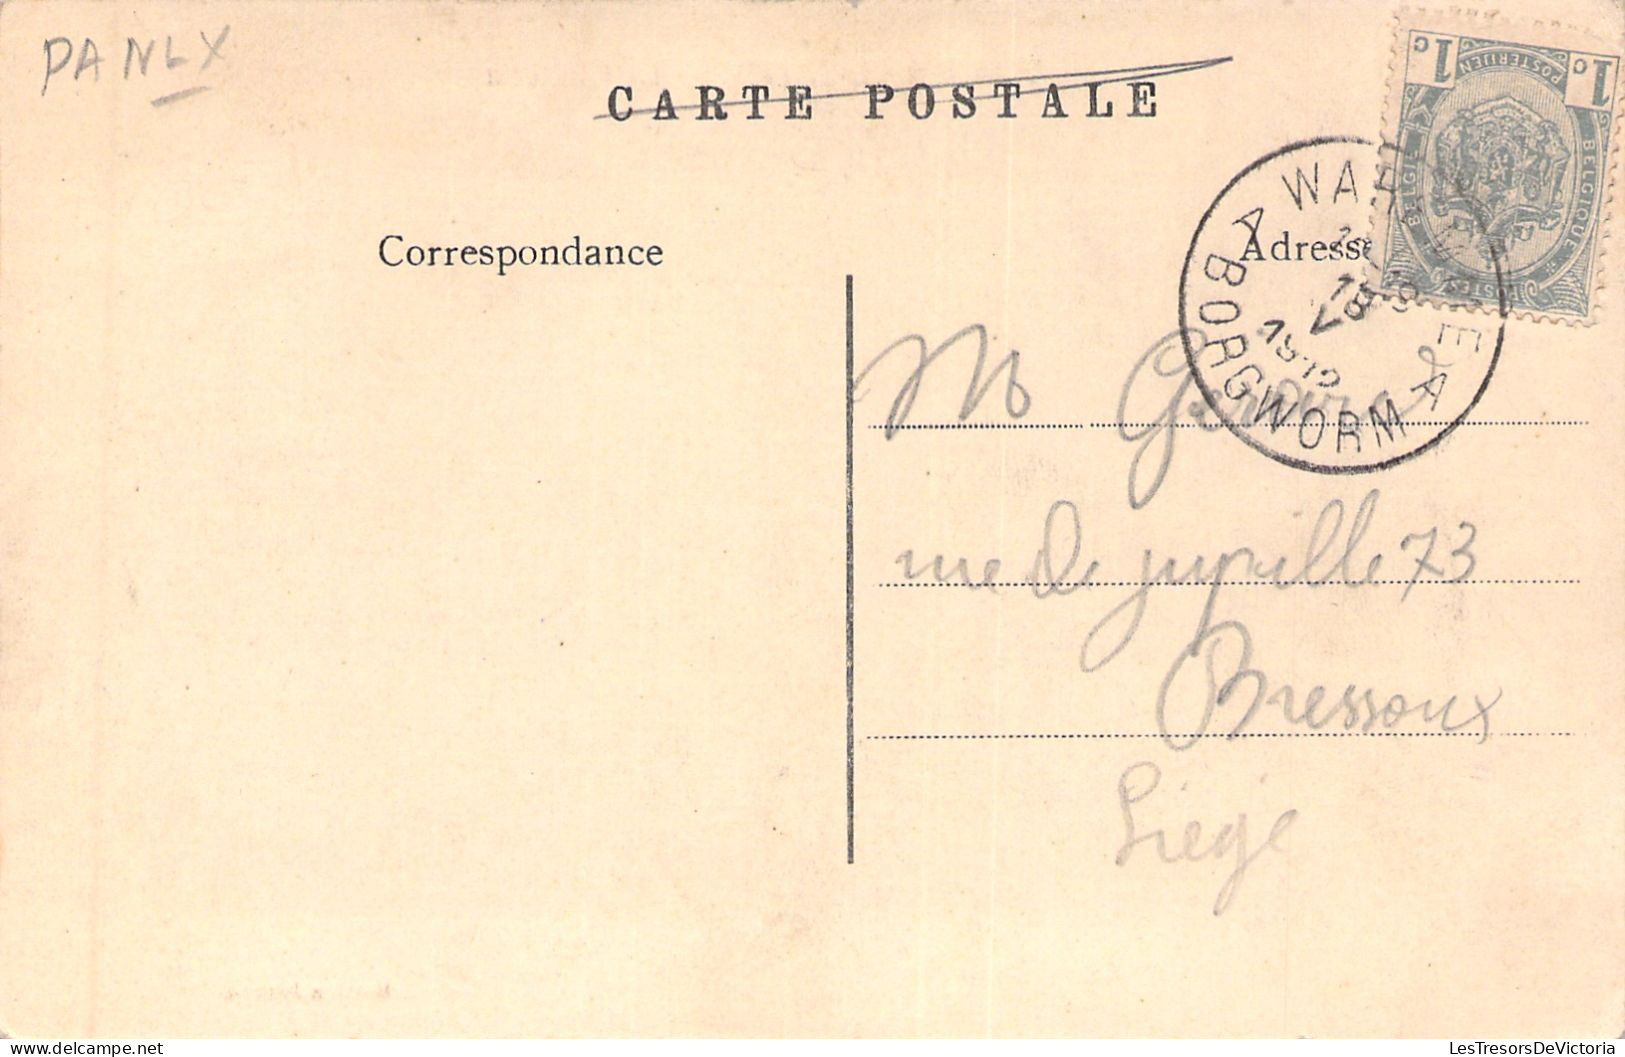 BELGIQUE - Waremme Saive - Le Chateau - Edition Jeanne - Carte Postale Ancienne - Borgworm